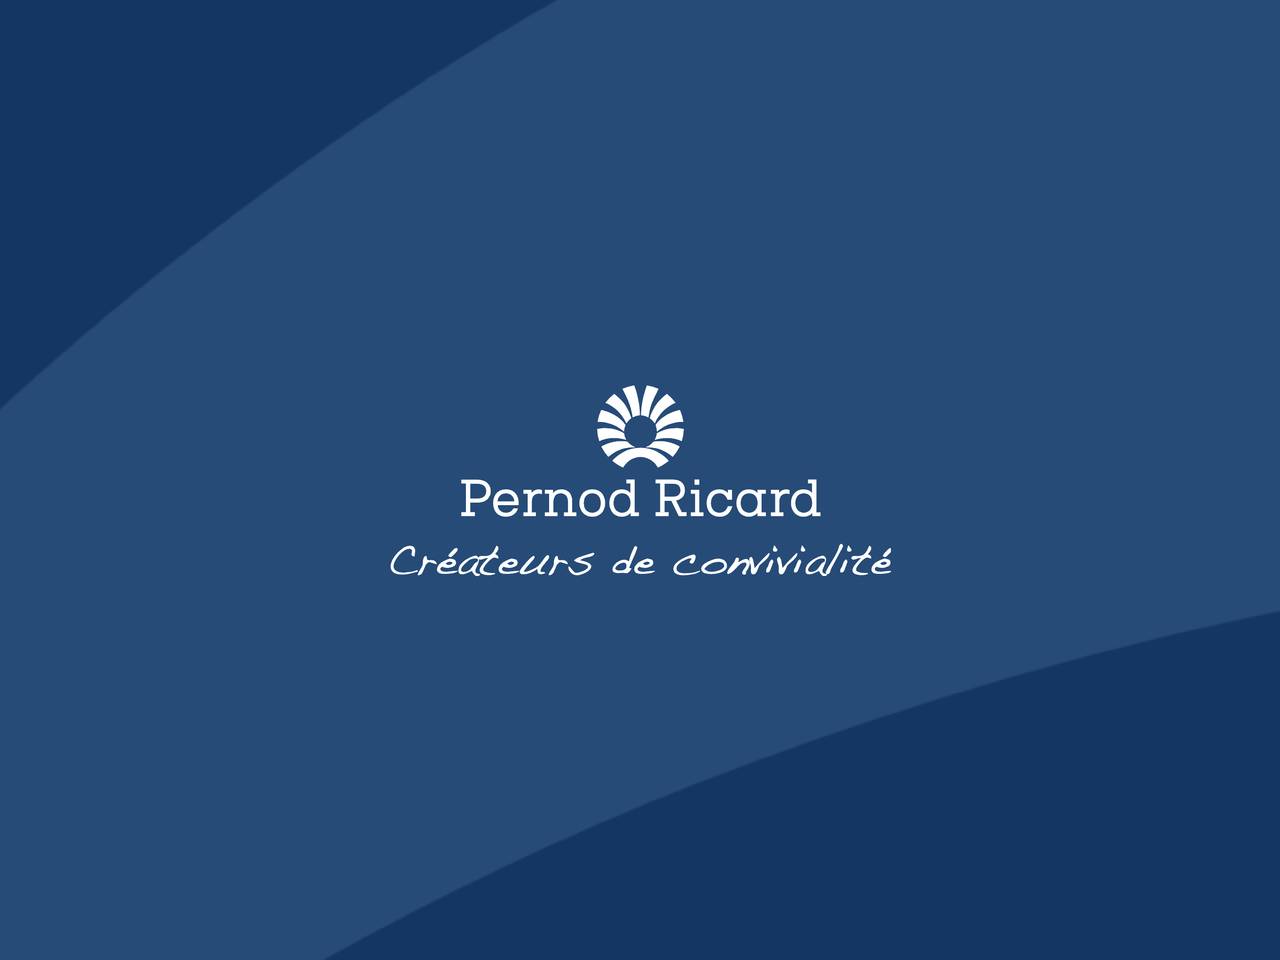 Перно рикар. Перно Рикар лого. Pernod Ricard продукция. Логотип перно Рикар Русь.